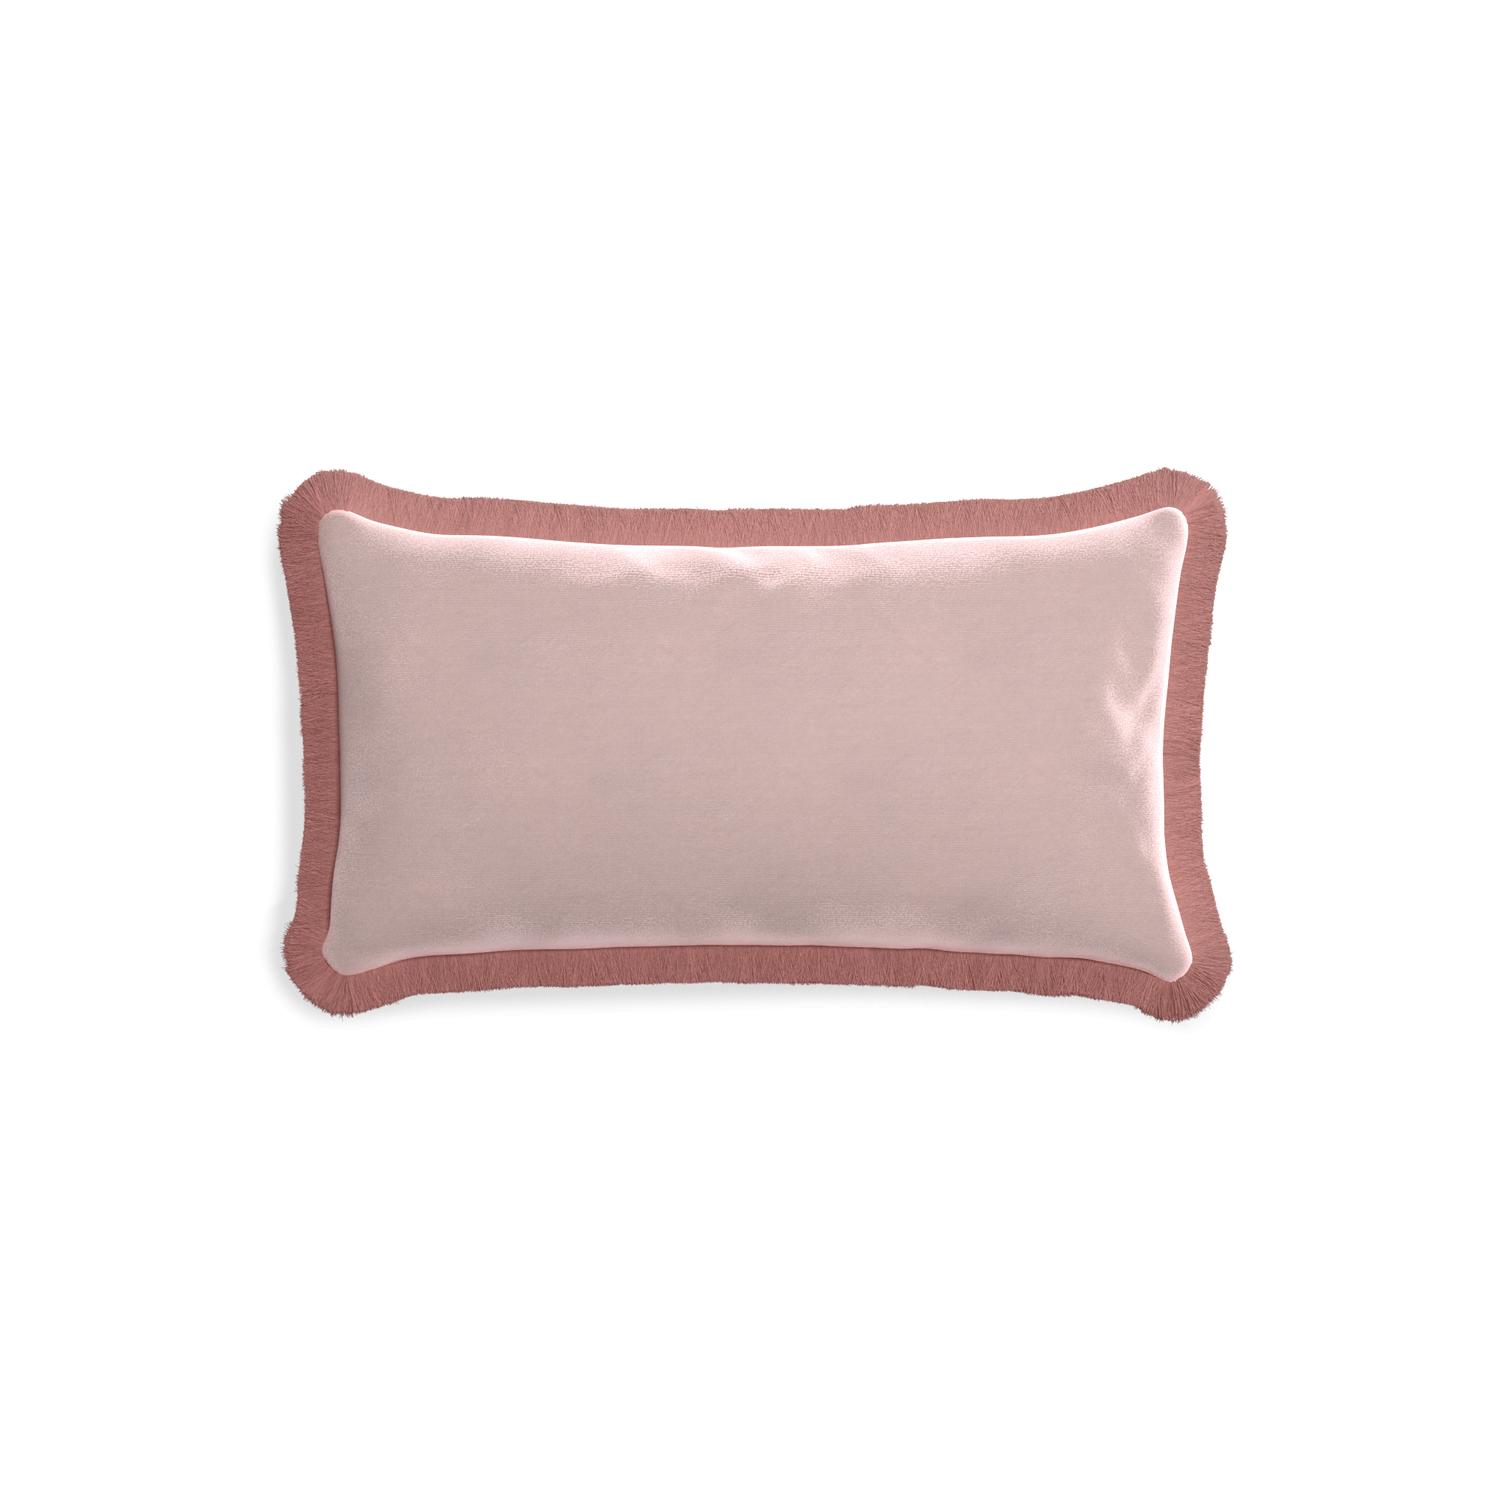 rectangle light pink velvet pillow with dusty rose fringe